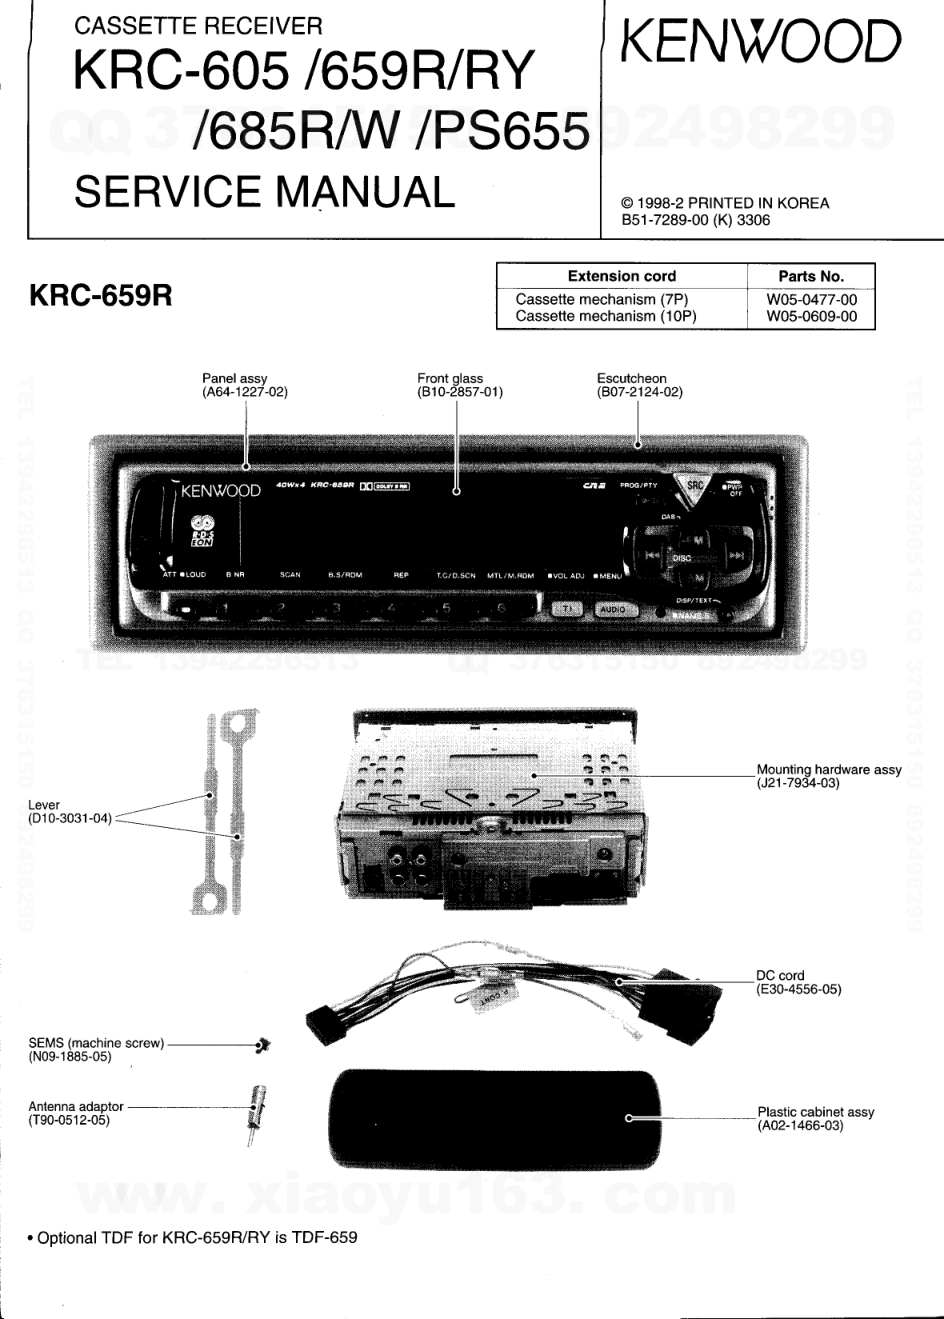 建伍KENWOOD KRC-659RY磁带录放机维修手册-0